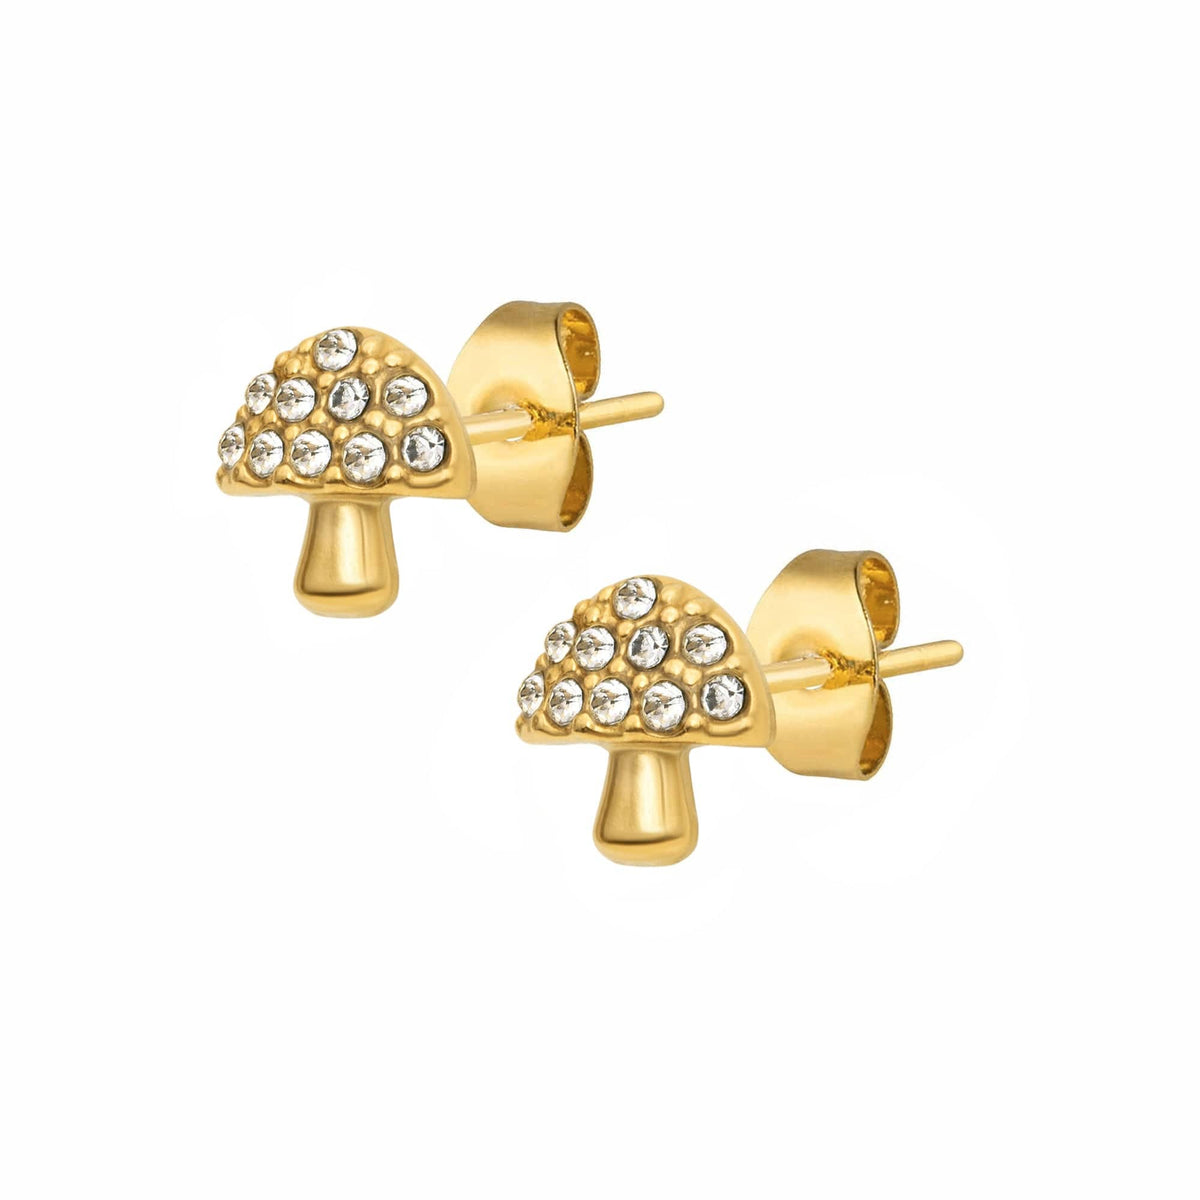 BohoMoon Stainless Steel Mushroom Stud Earrings Gold